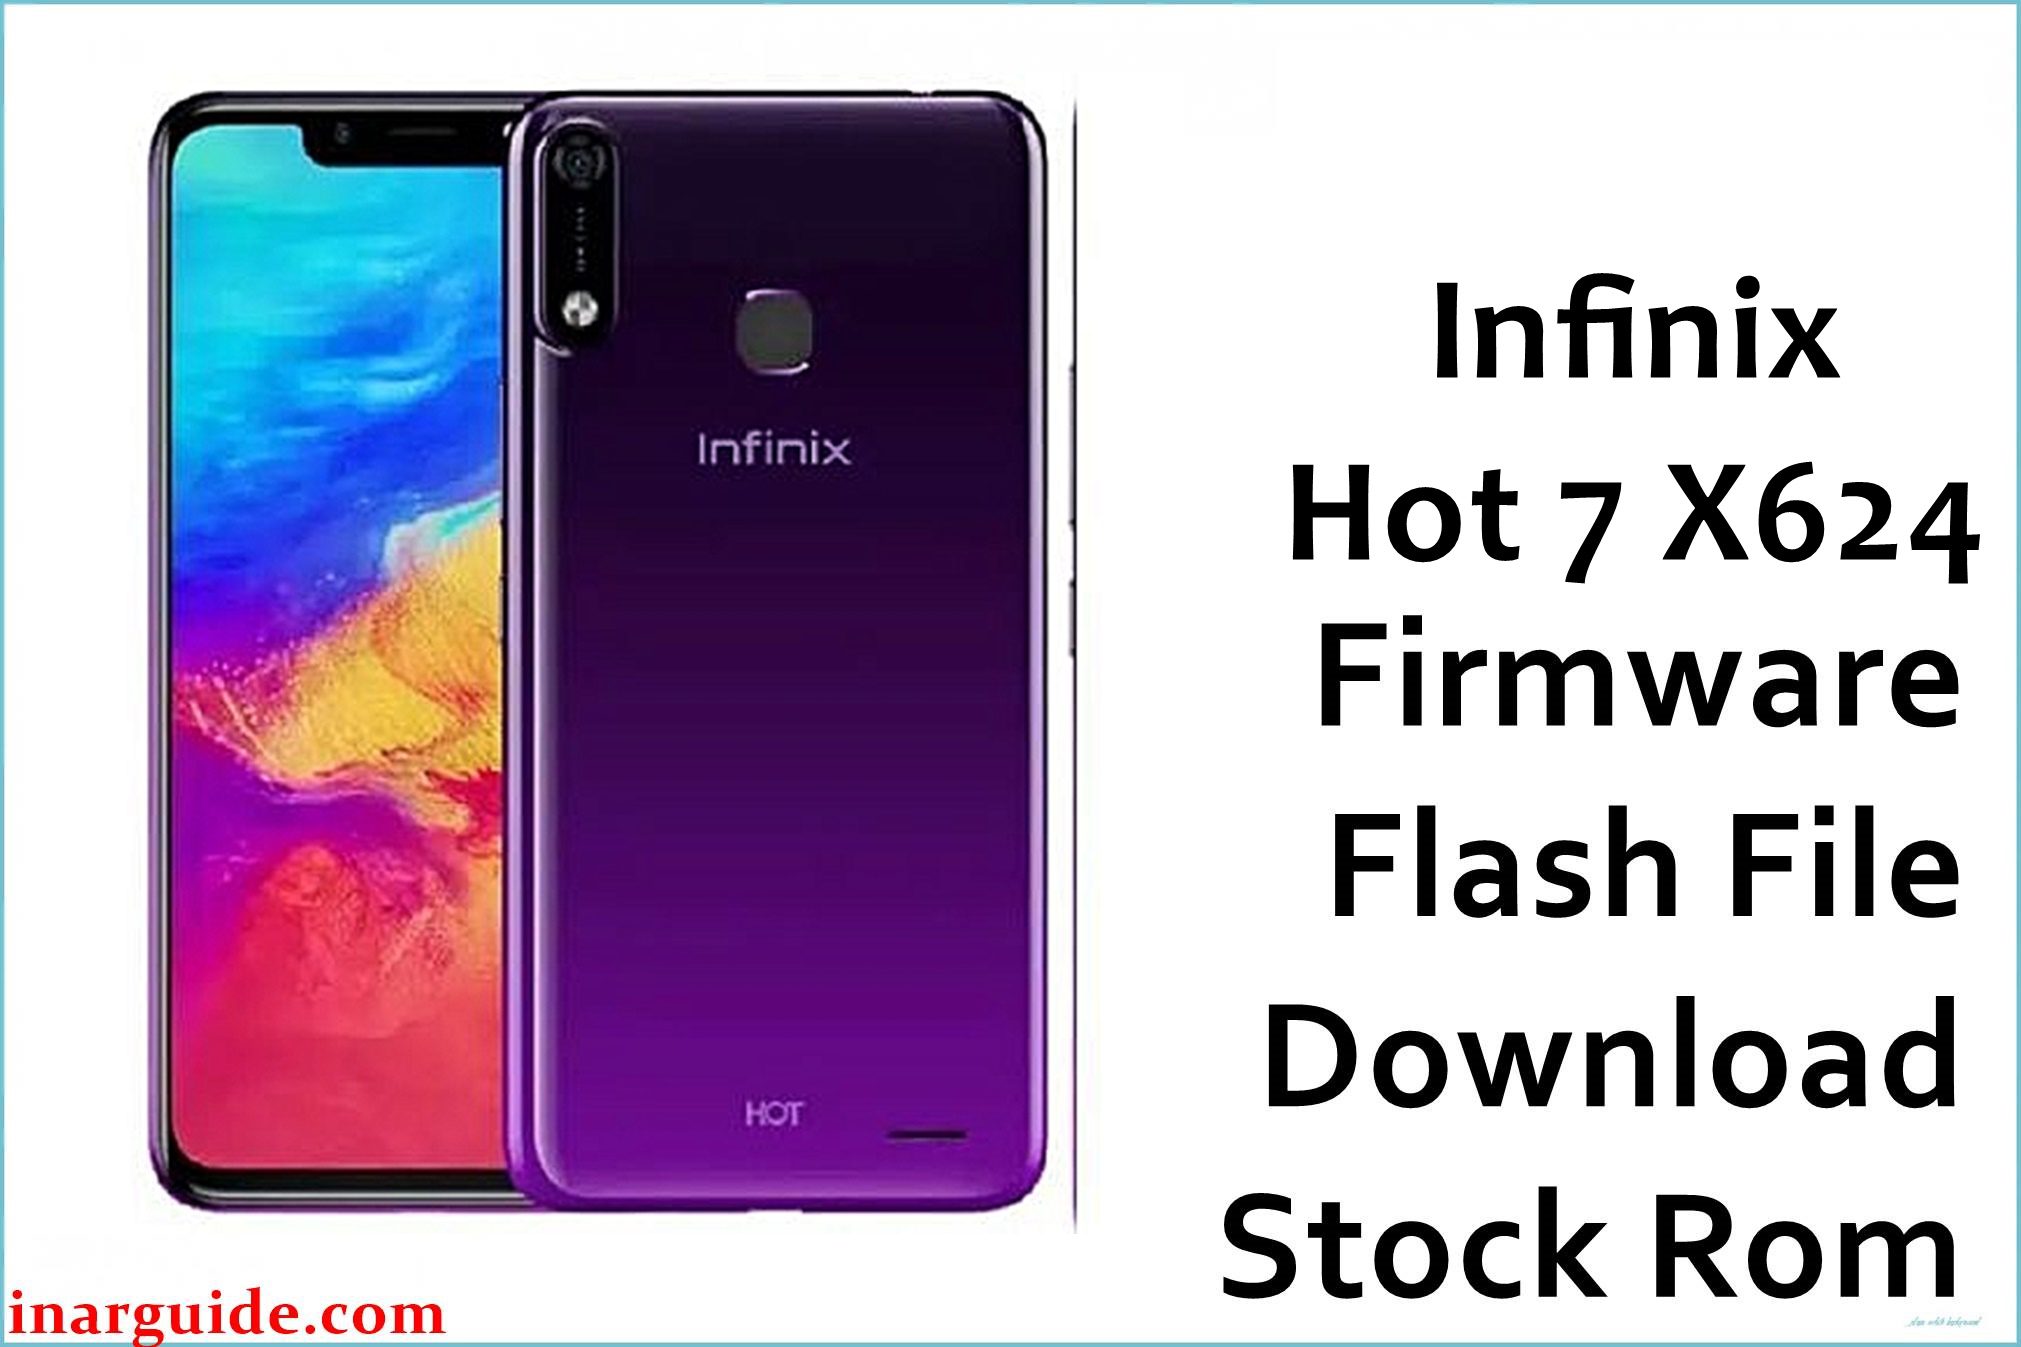 Infinix Hot 7 X624